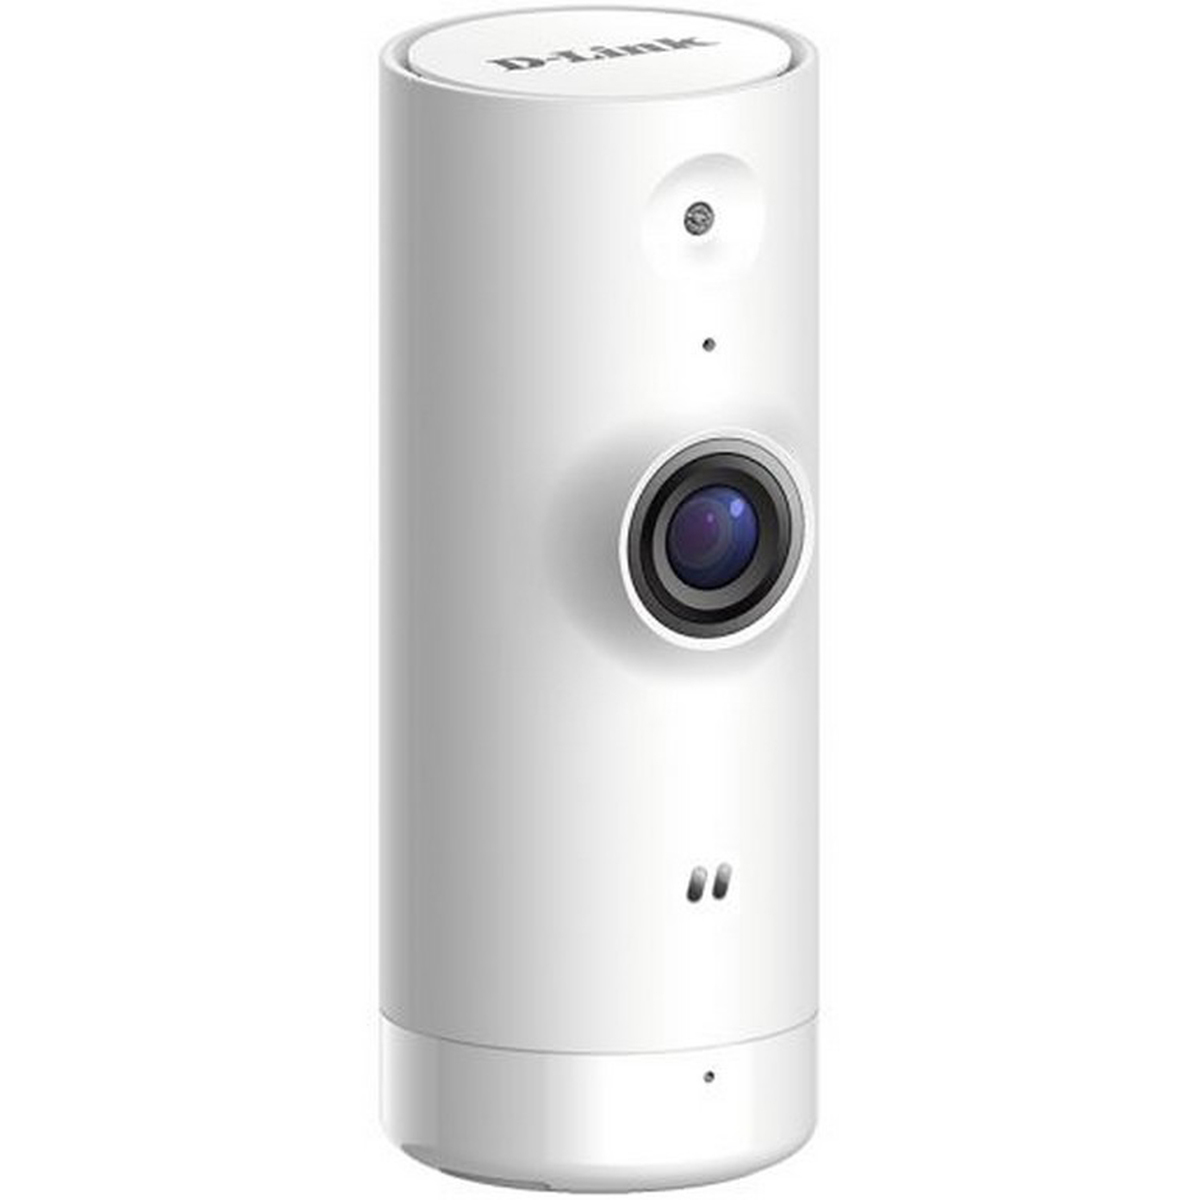 D-Link Mini HD WiFi Camera DCS-8000LH